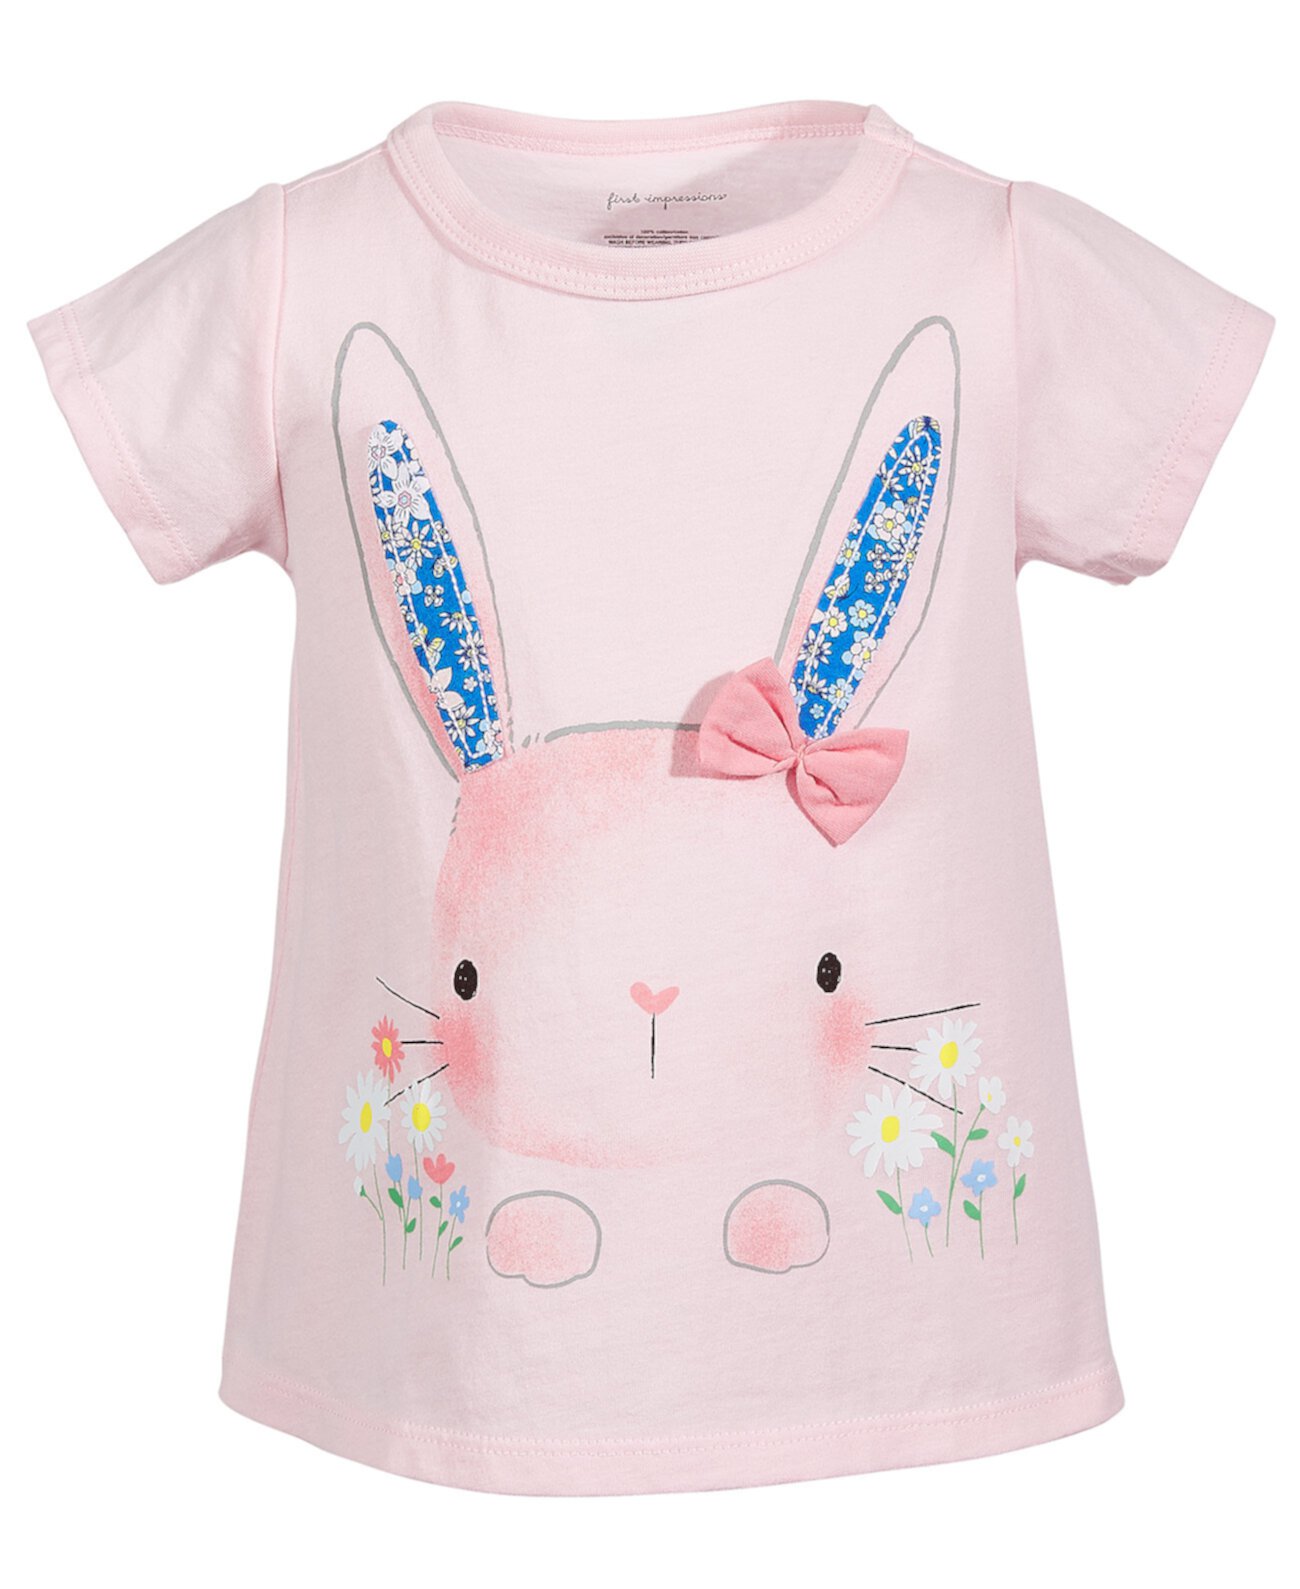 Хлопковая футболка для маленьких девочек Garden Bunny, созданная для Macy's First Impressions